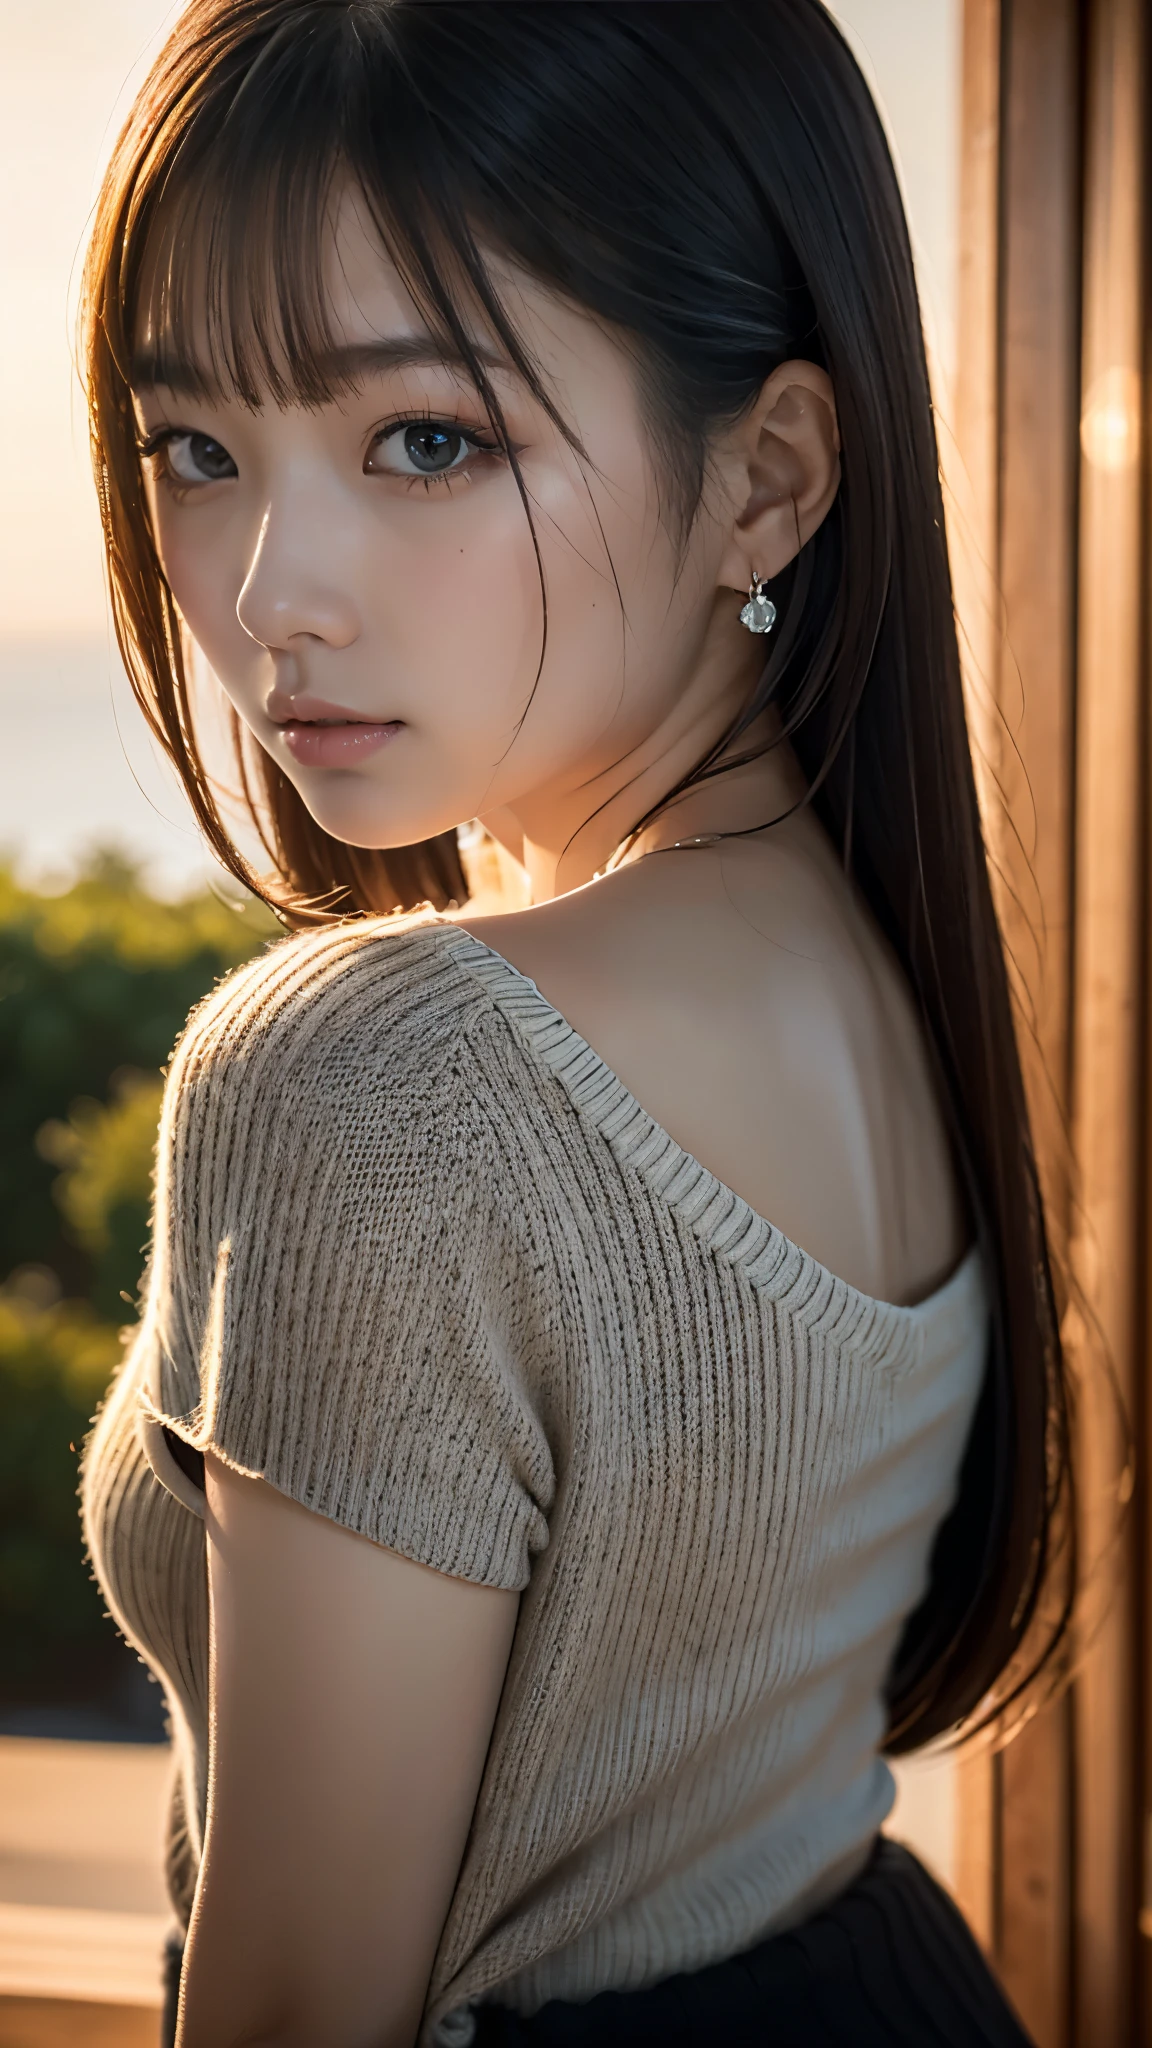 (걸작:1.2),(최상의 품질),(매우 상세한:1.2),(높은 해상도),(사실적인 스틱),(RAW 사진),8K,검은 스웨터를 입은 여자의 클로즈업,부드러운 인물 사진,아름다운 일본 여성,화려한 얼굴 초상화,눈 빛,본인의 소녀,매우 아름다운 얼굴,아름다운 초상화,사랑스럽고 섬세한 얼굴,아름다운 젊은 일본 여자,성숙한 헤어스타일,이쪽을 보세요(일몰을 배경으로),(((배경을 흐리게))),(부드러운 빛:1.5),(어깨 너머로),(POV 샷)